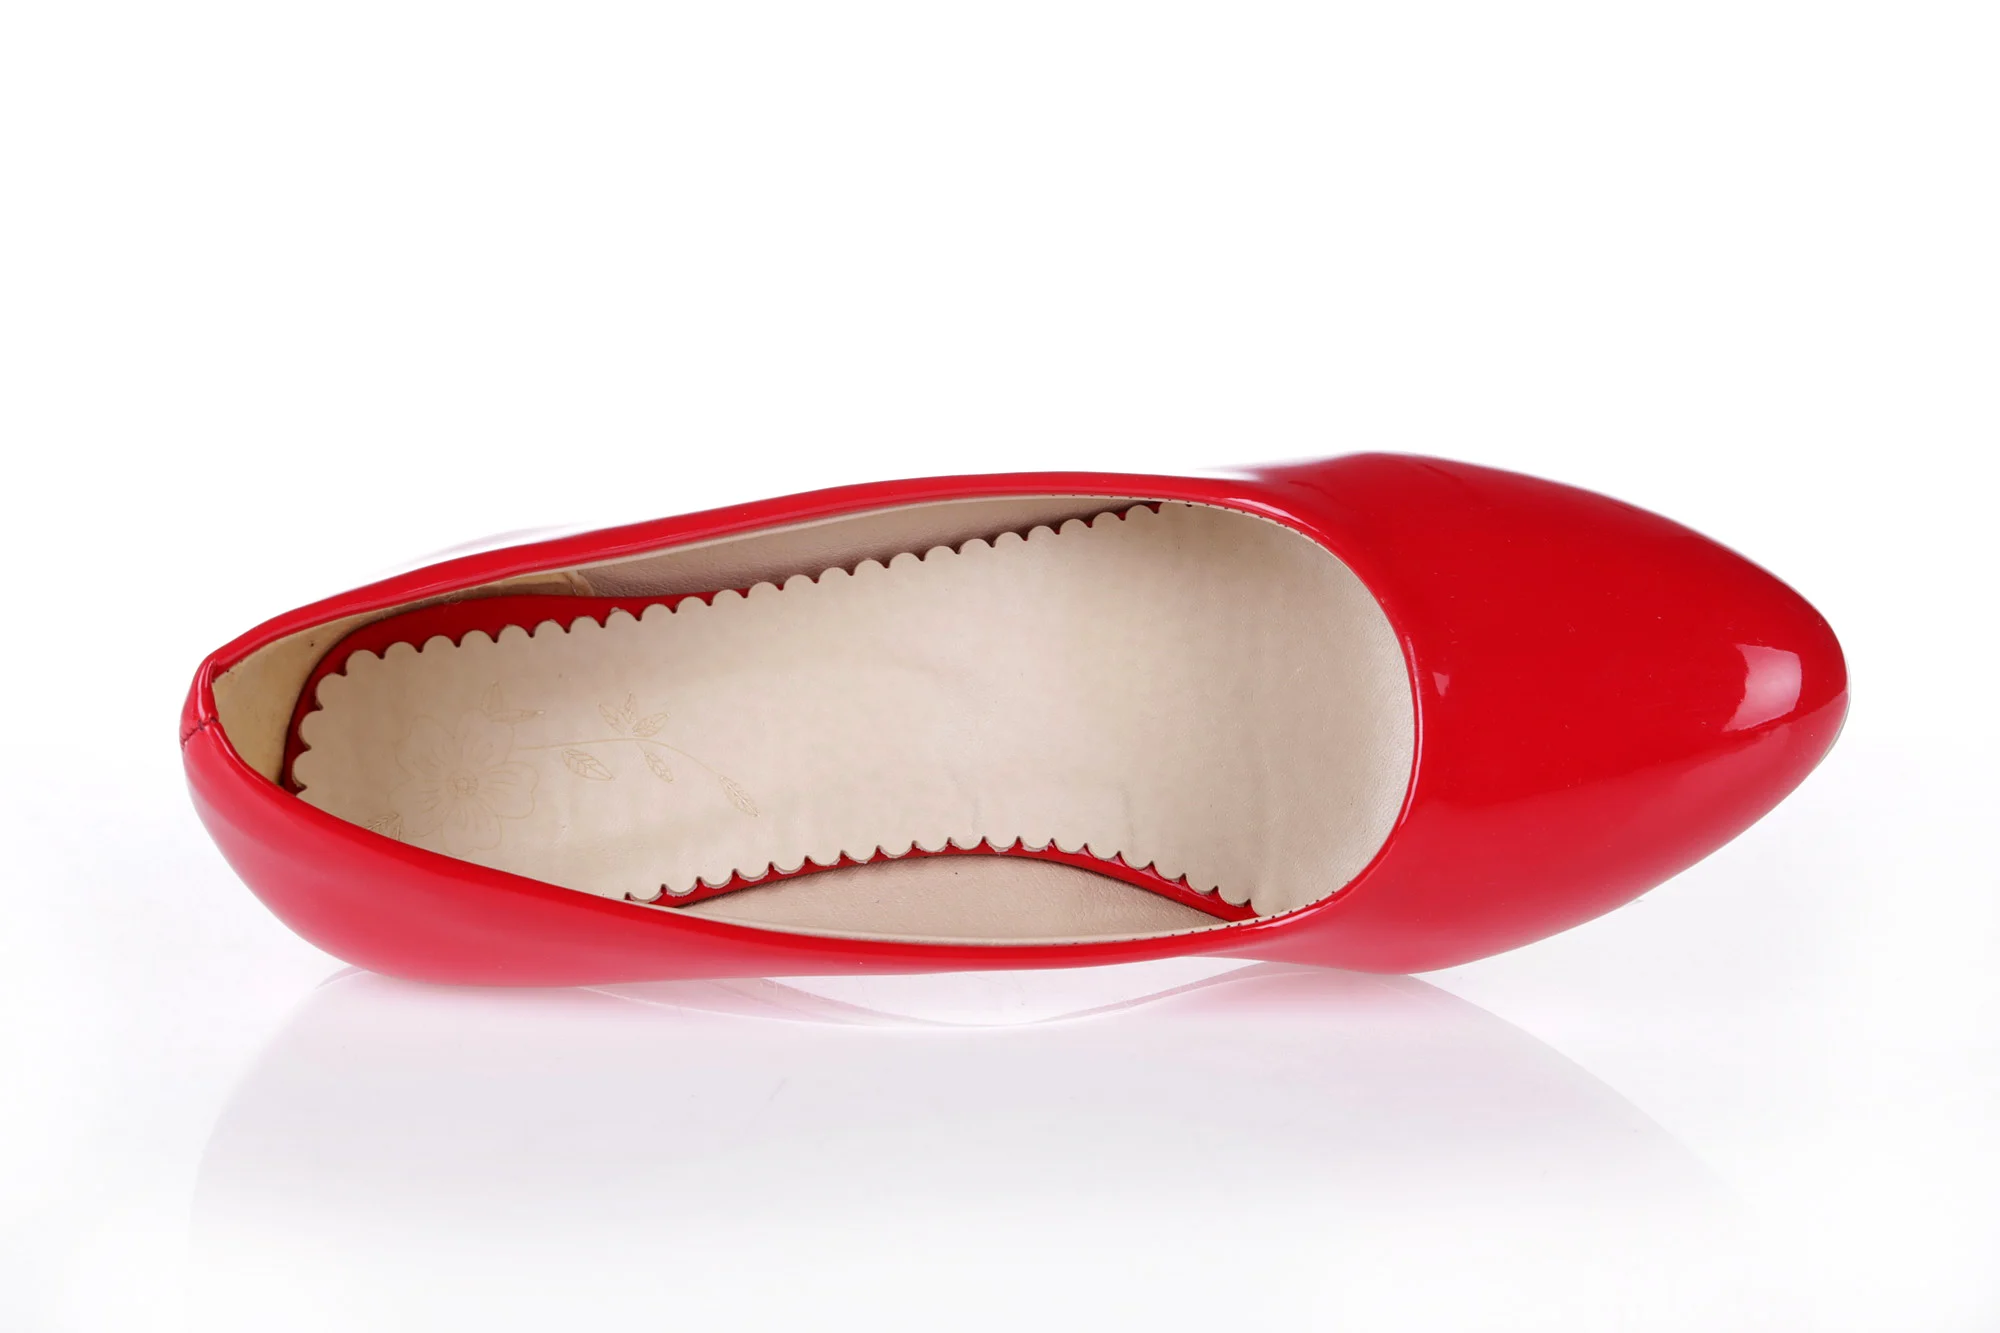 Большие размеры 48; повседневная женская обувь на танкетке; модные классические туфли-лодочки на низком каблуке; цвет красный, белый; вечерние офисные туфли для свадьбы